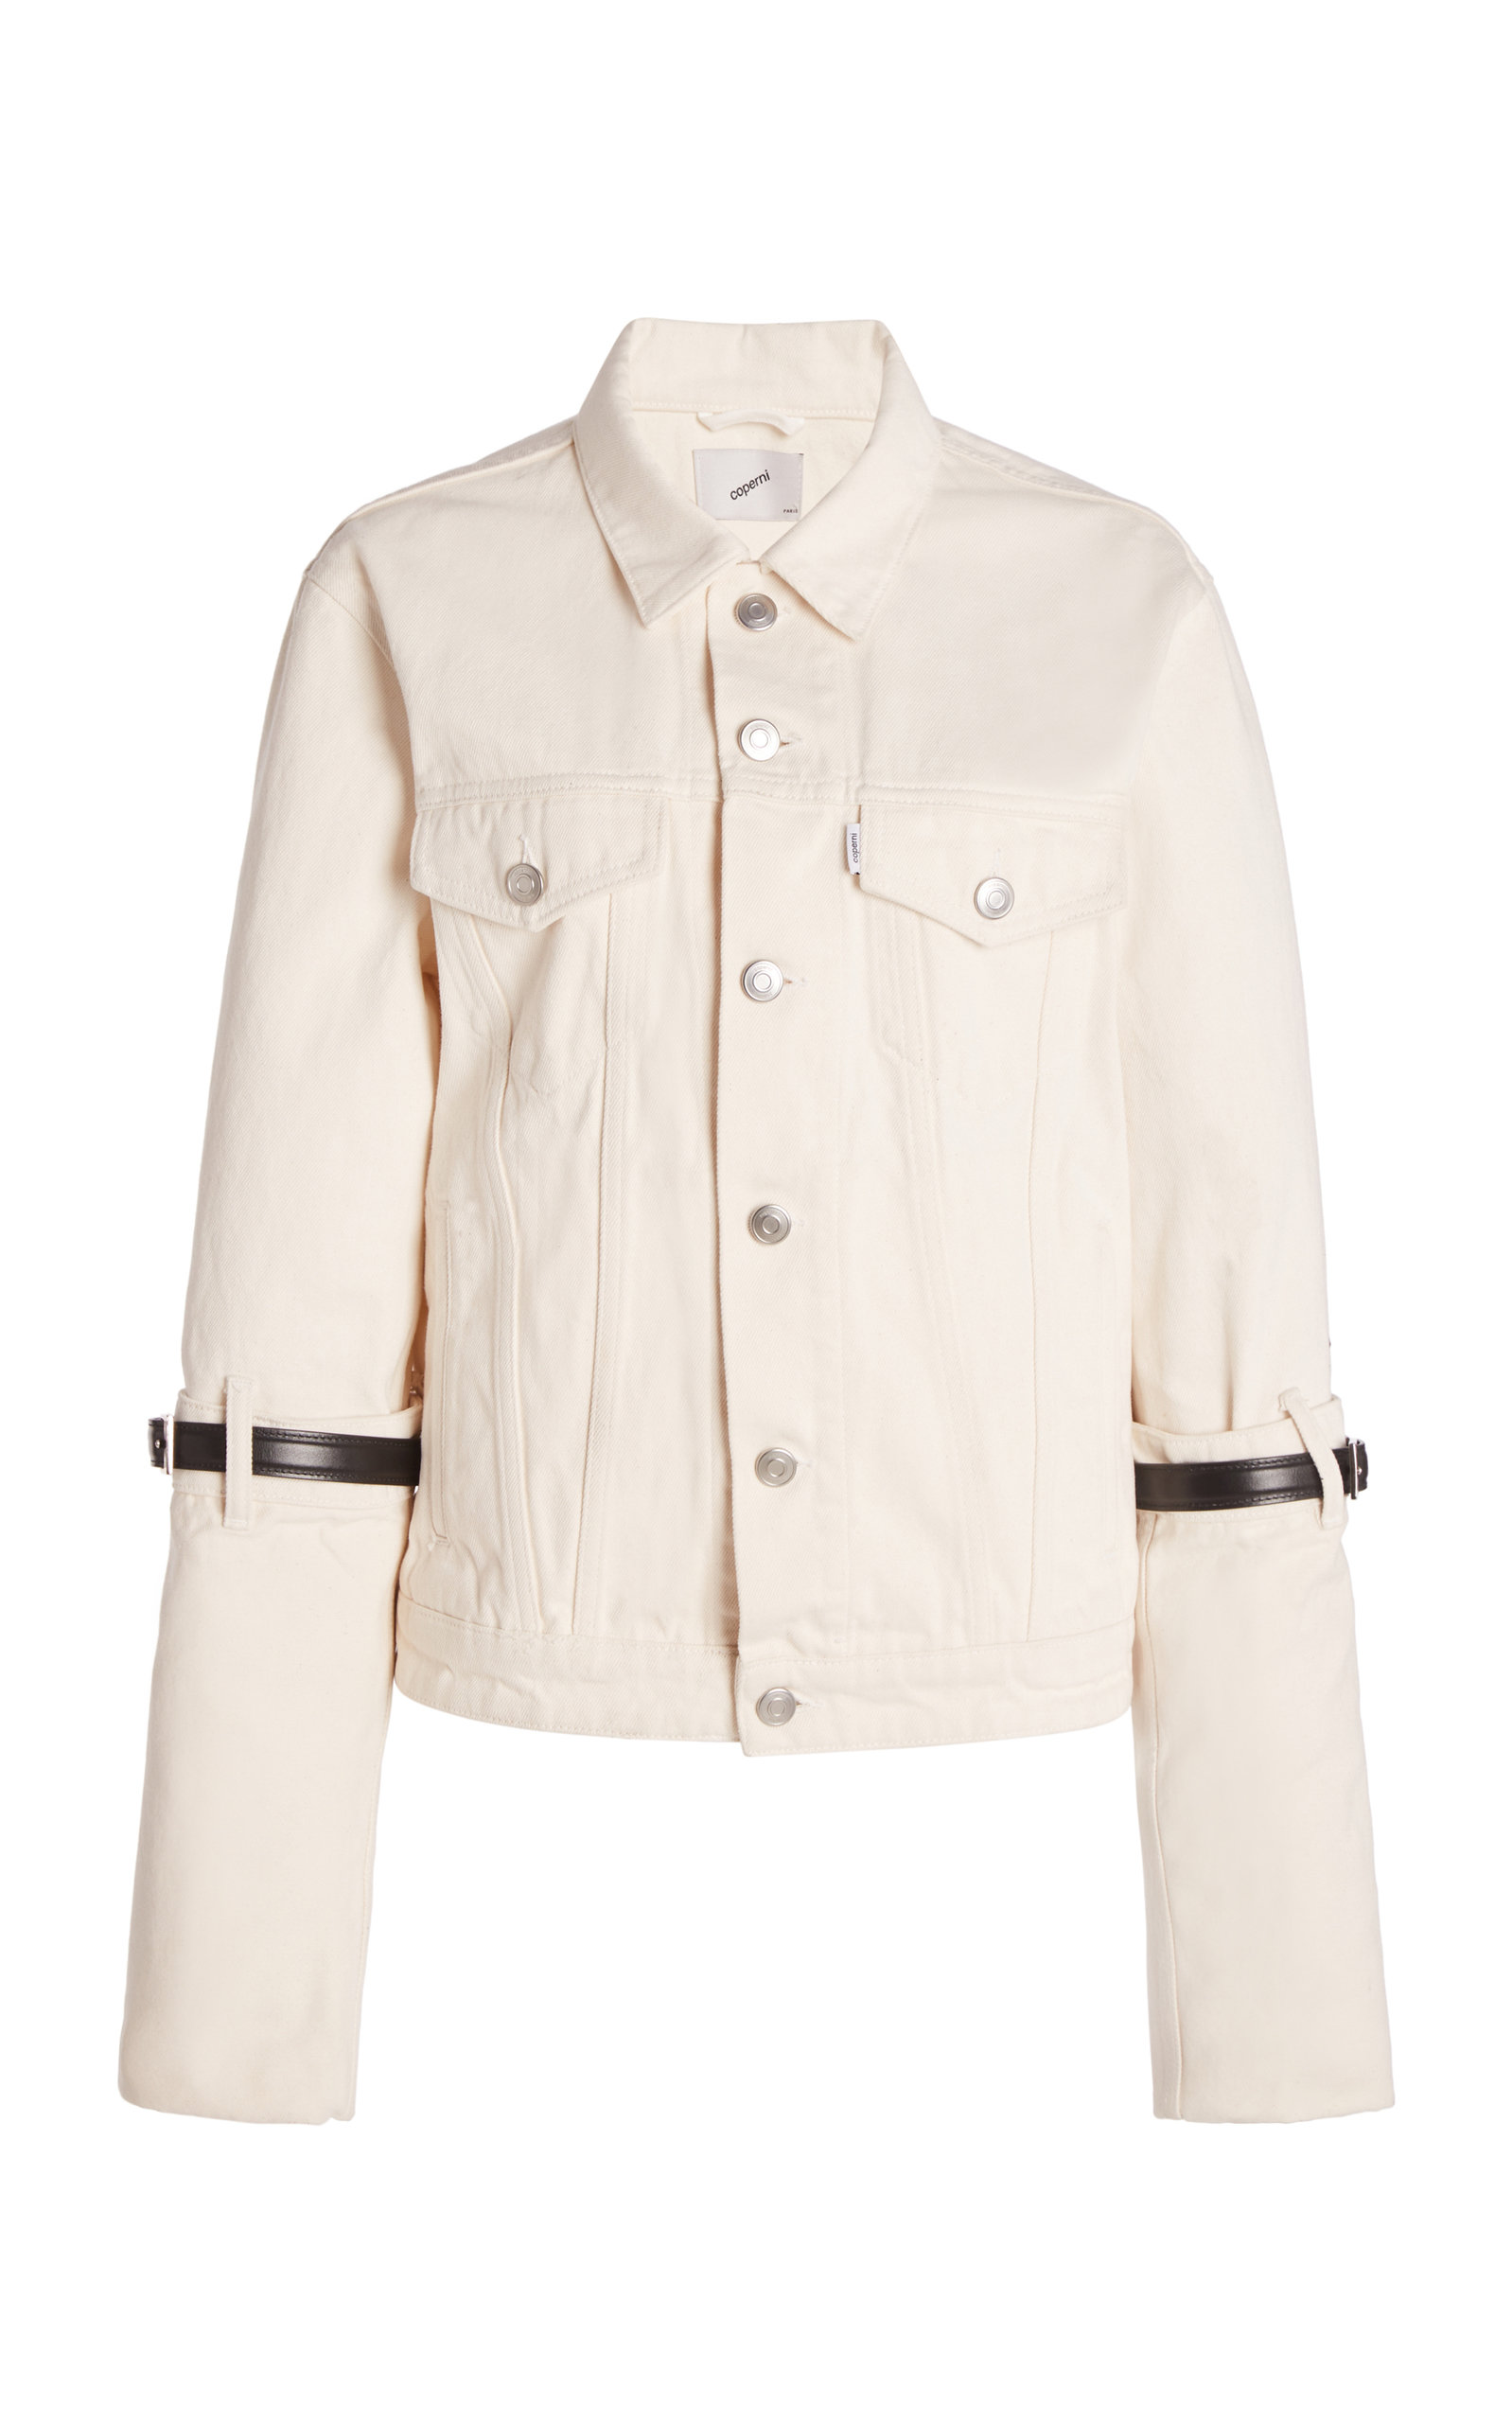 Coperni - Women's Hybrid Denim Jacket - White - Only At Moda Operandi